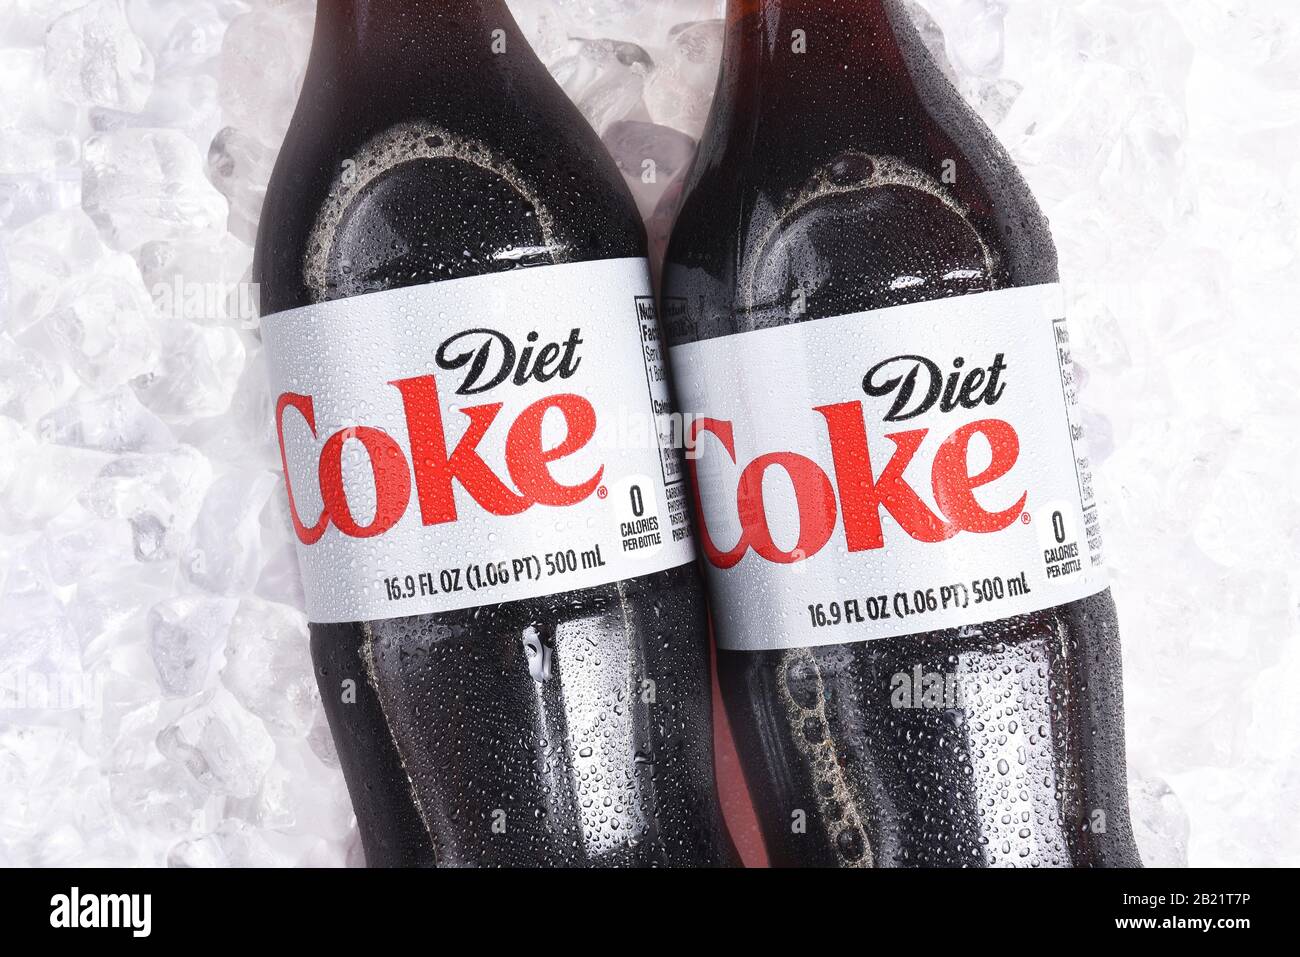 Irvine, CALIFORNIA - 22 gennaio 2017: 3 bottiglie di Dieta coke sul ghiaccio. Coca-Cola è una delle bevande gassate preferite al mondo. Foto Stock